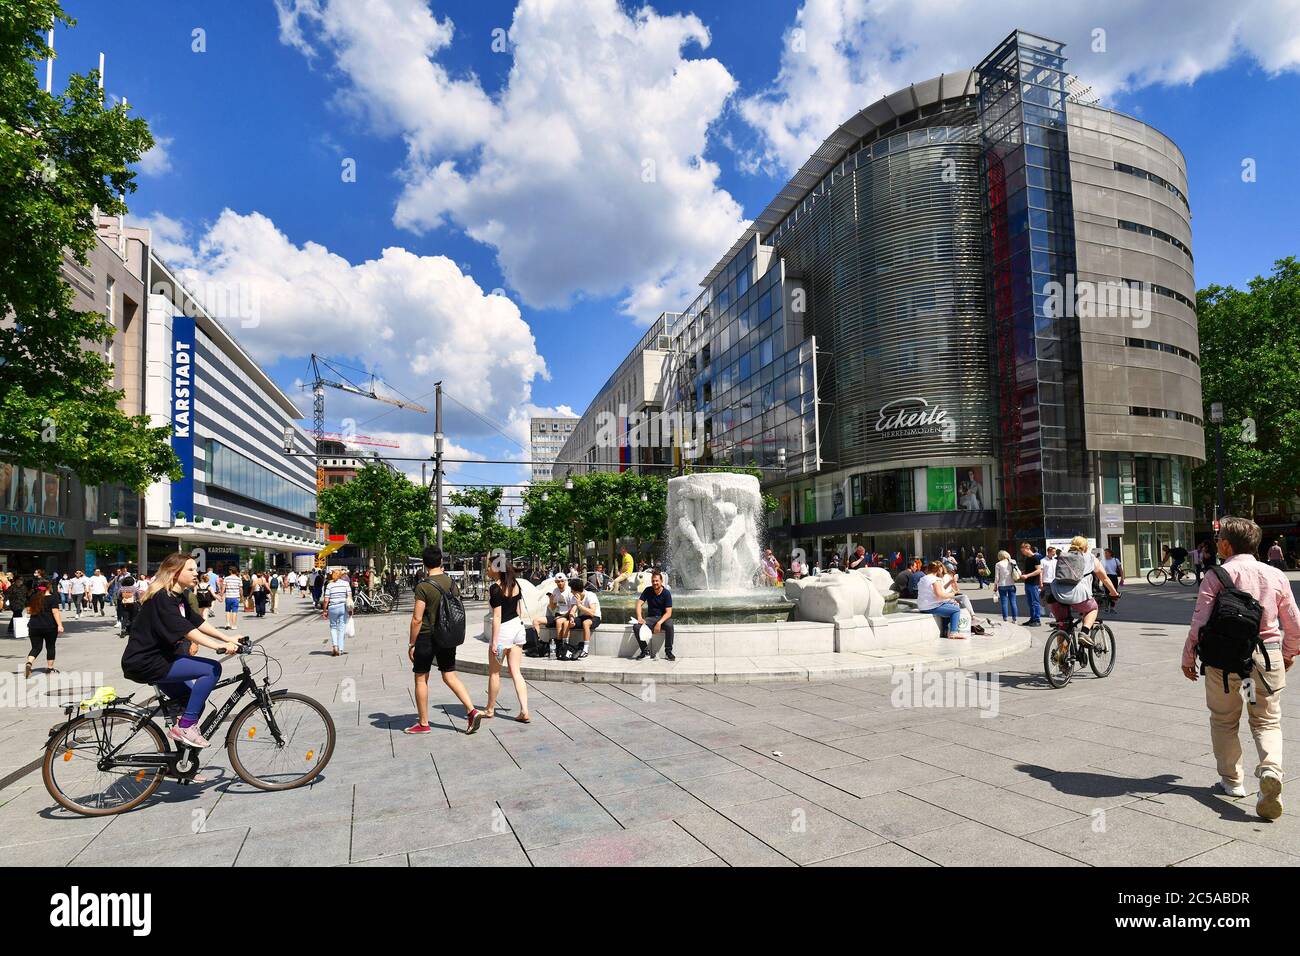 Francoforte sul meno, Germania - Giugno 2020: La principale via dello shopping chiamata 'Zeil' con la Fontana di 'Brockhaus' in una giornata di sole piena di persone Foto Stock